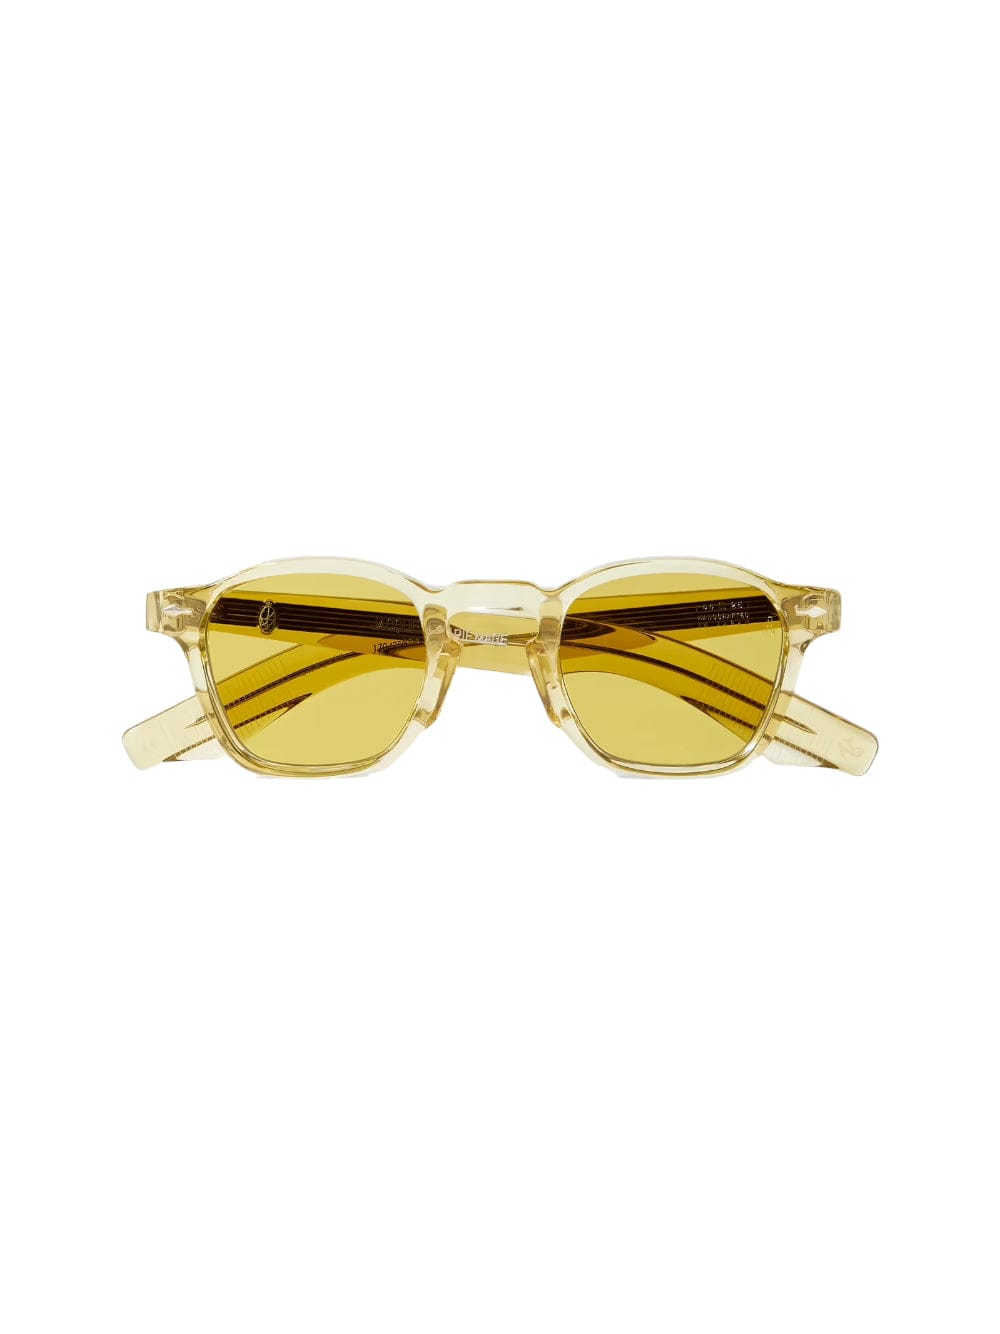 Zephirin - Yellow Sunglasses